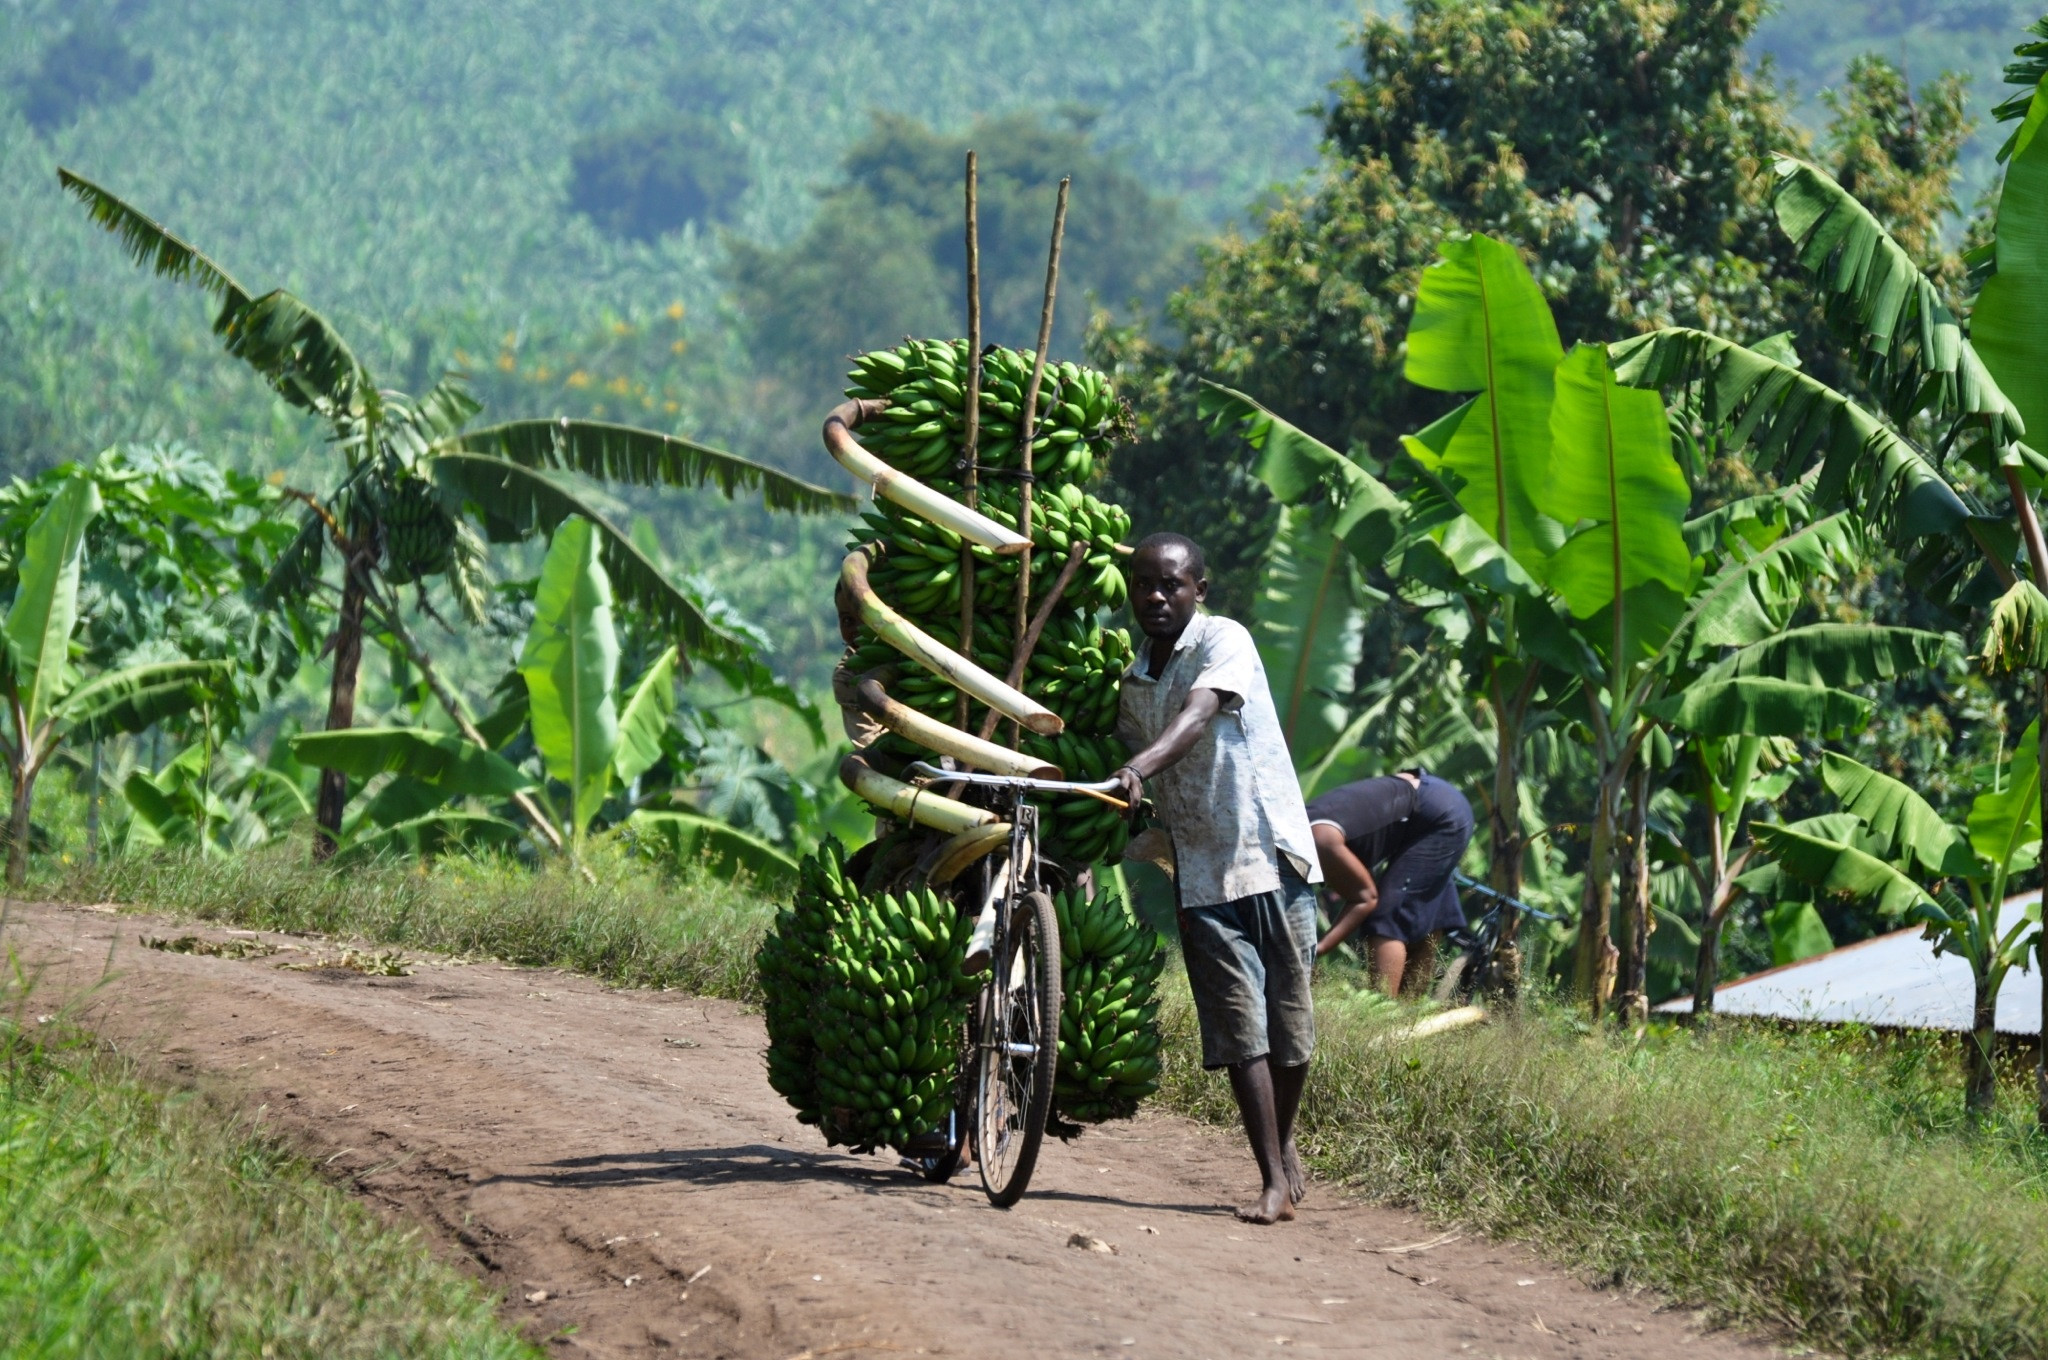 非洲小伙骑中国自行车创业运输香蕉一天赚5美元就能养活全家